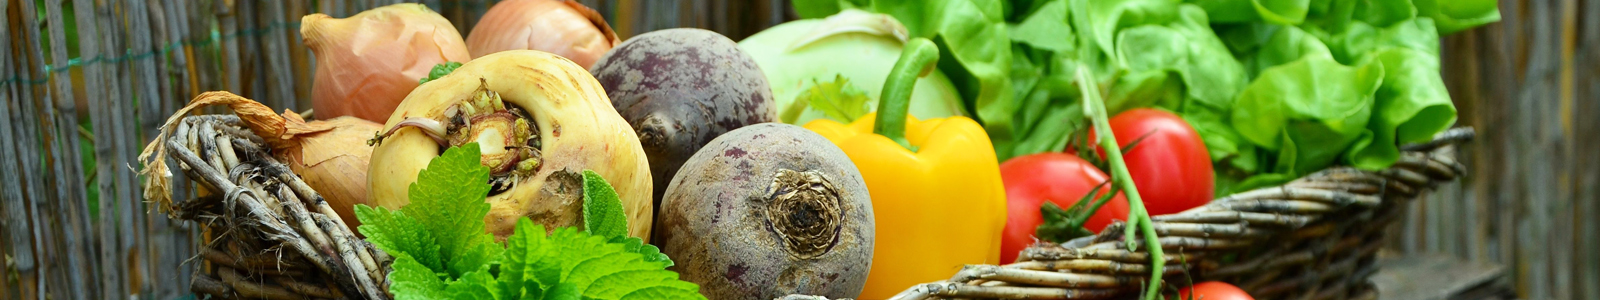 Korb mit verschiedenen Gemüsesorten ©pixabay